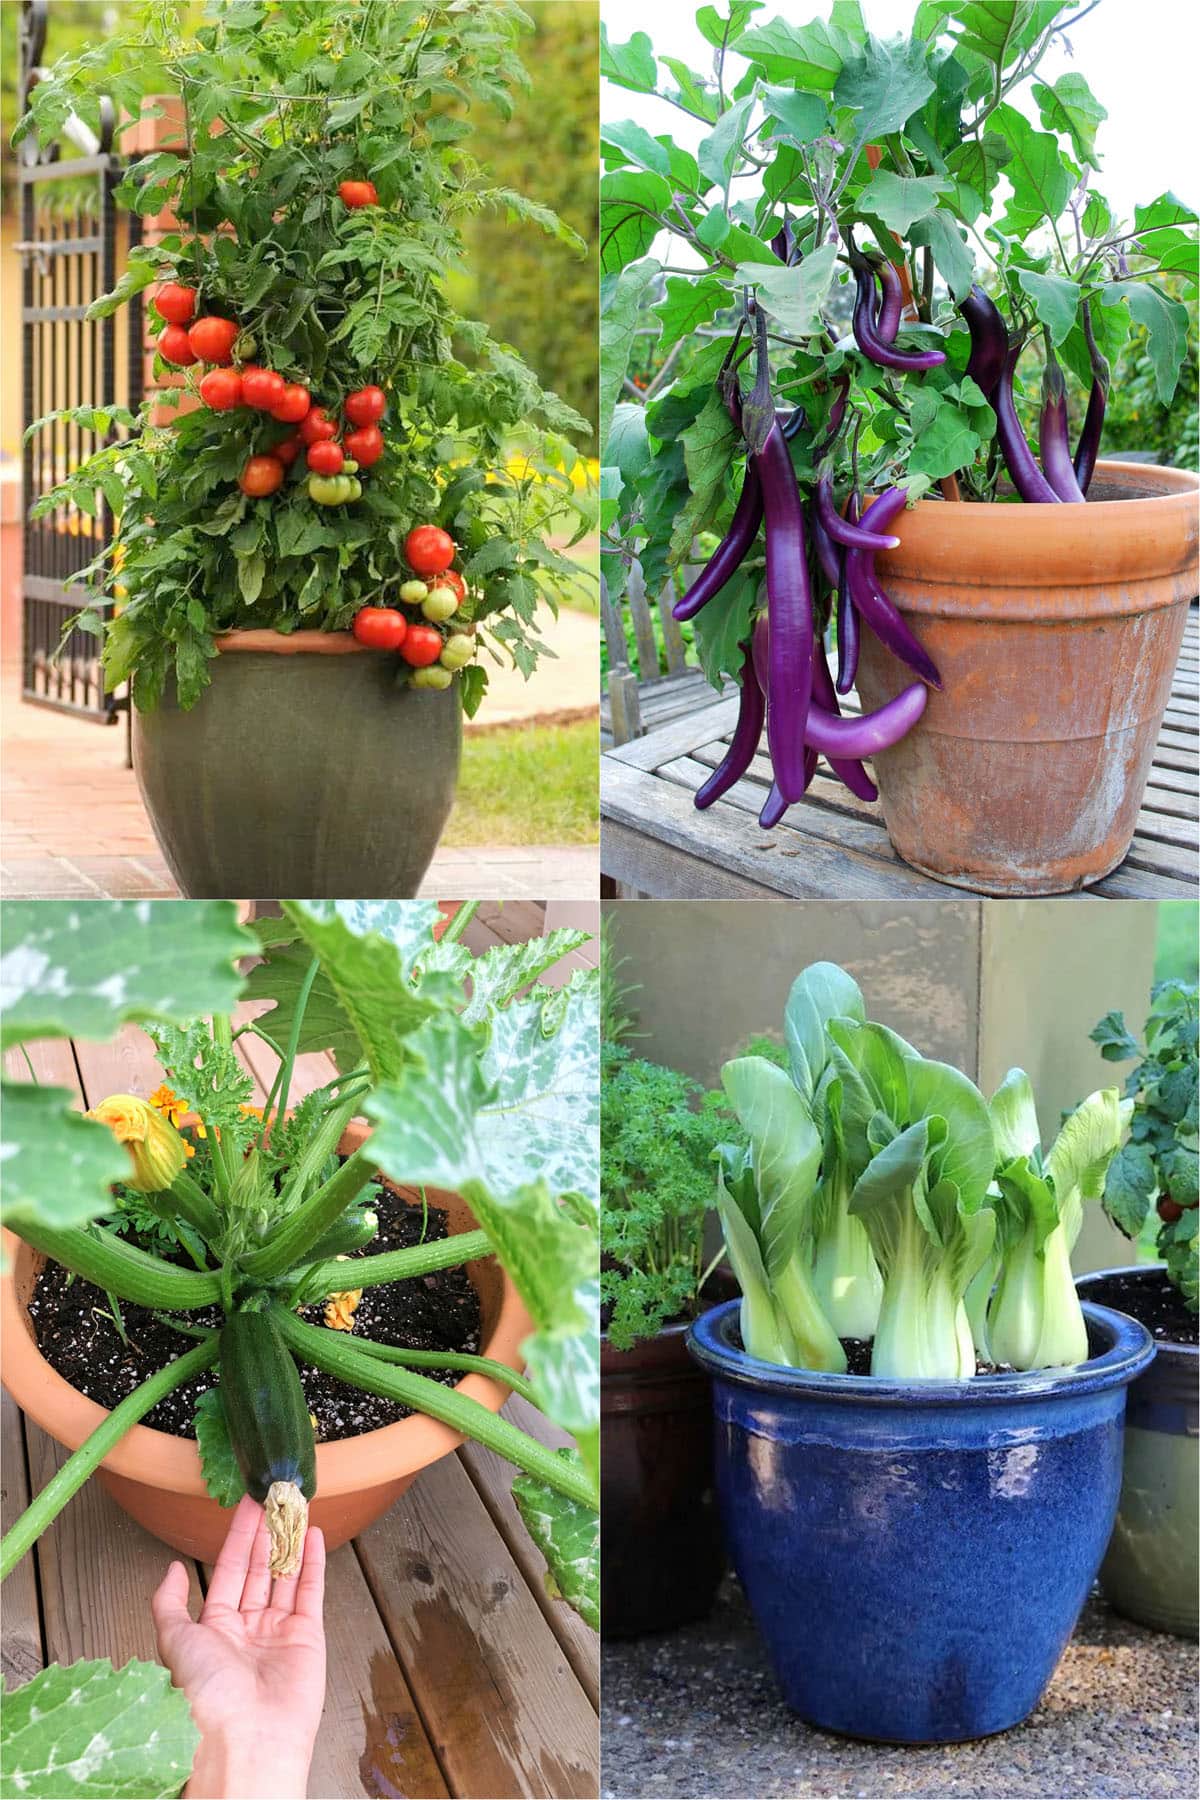 19 Vegetable Container Garden Ideas for a Prettier Way to Grow Produce   Garden containers, Container gardening vegetables, Growing vegetables